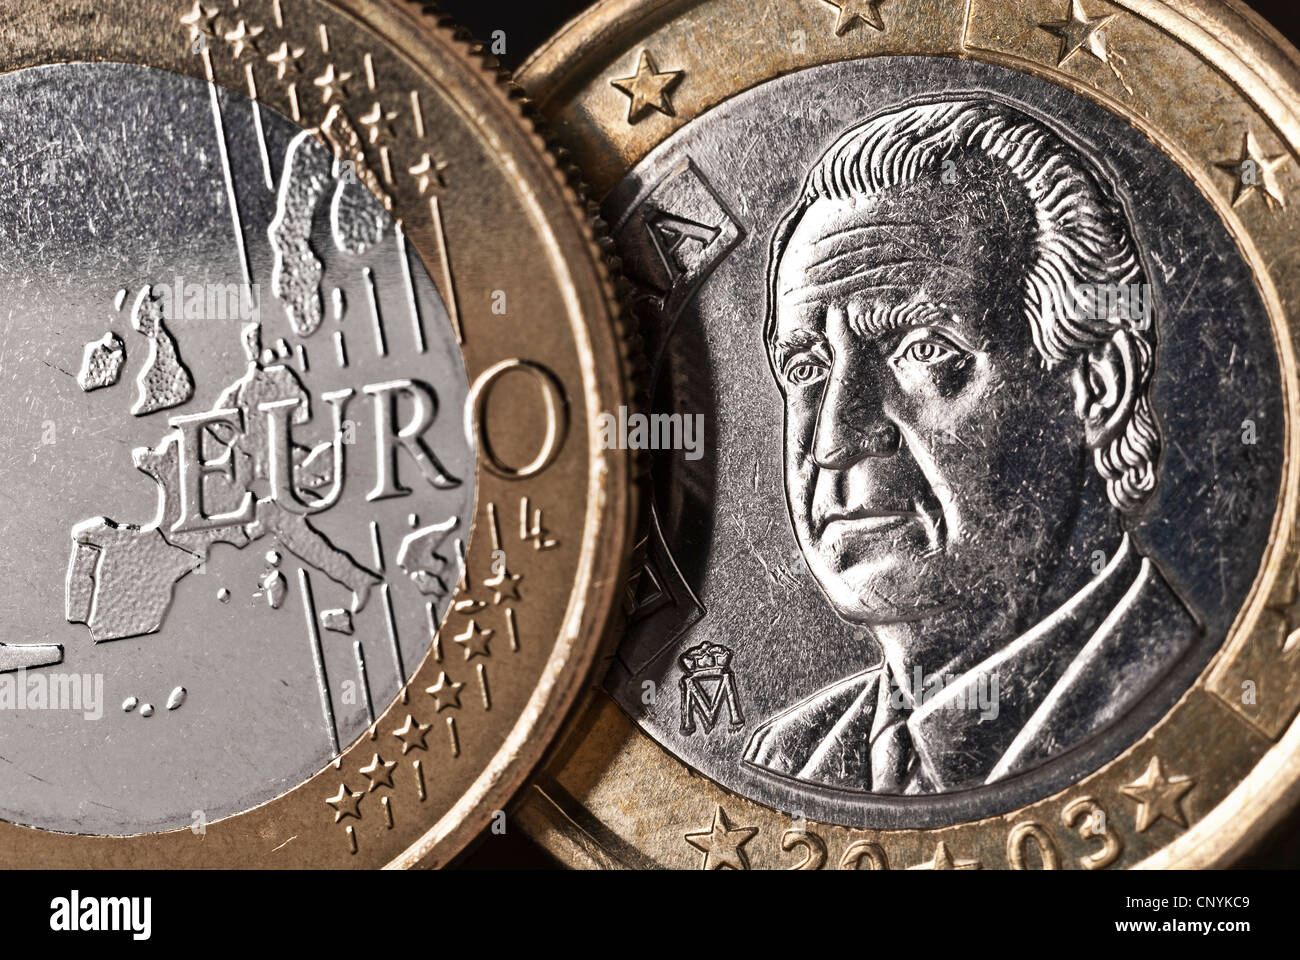 Vorder- und Rückseite einer spanischen € Münze in enger werden. Stockfoto